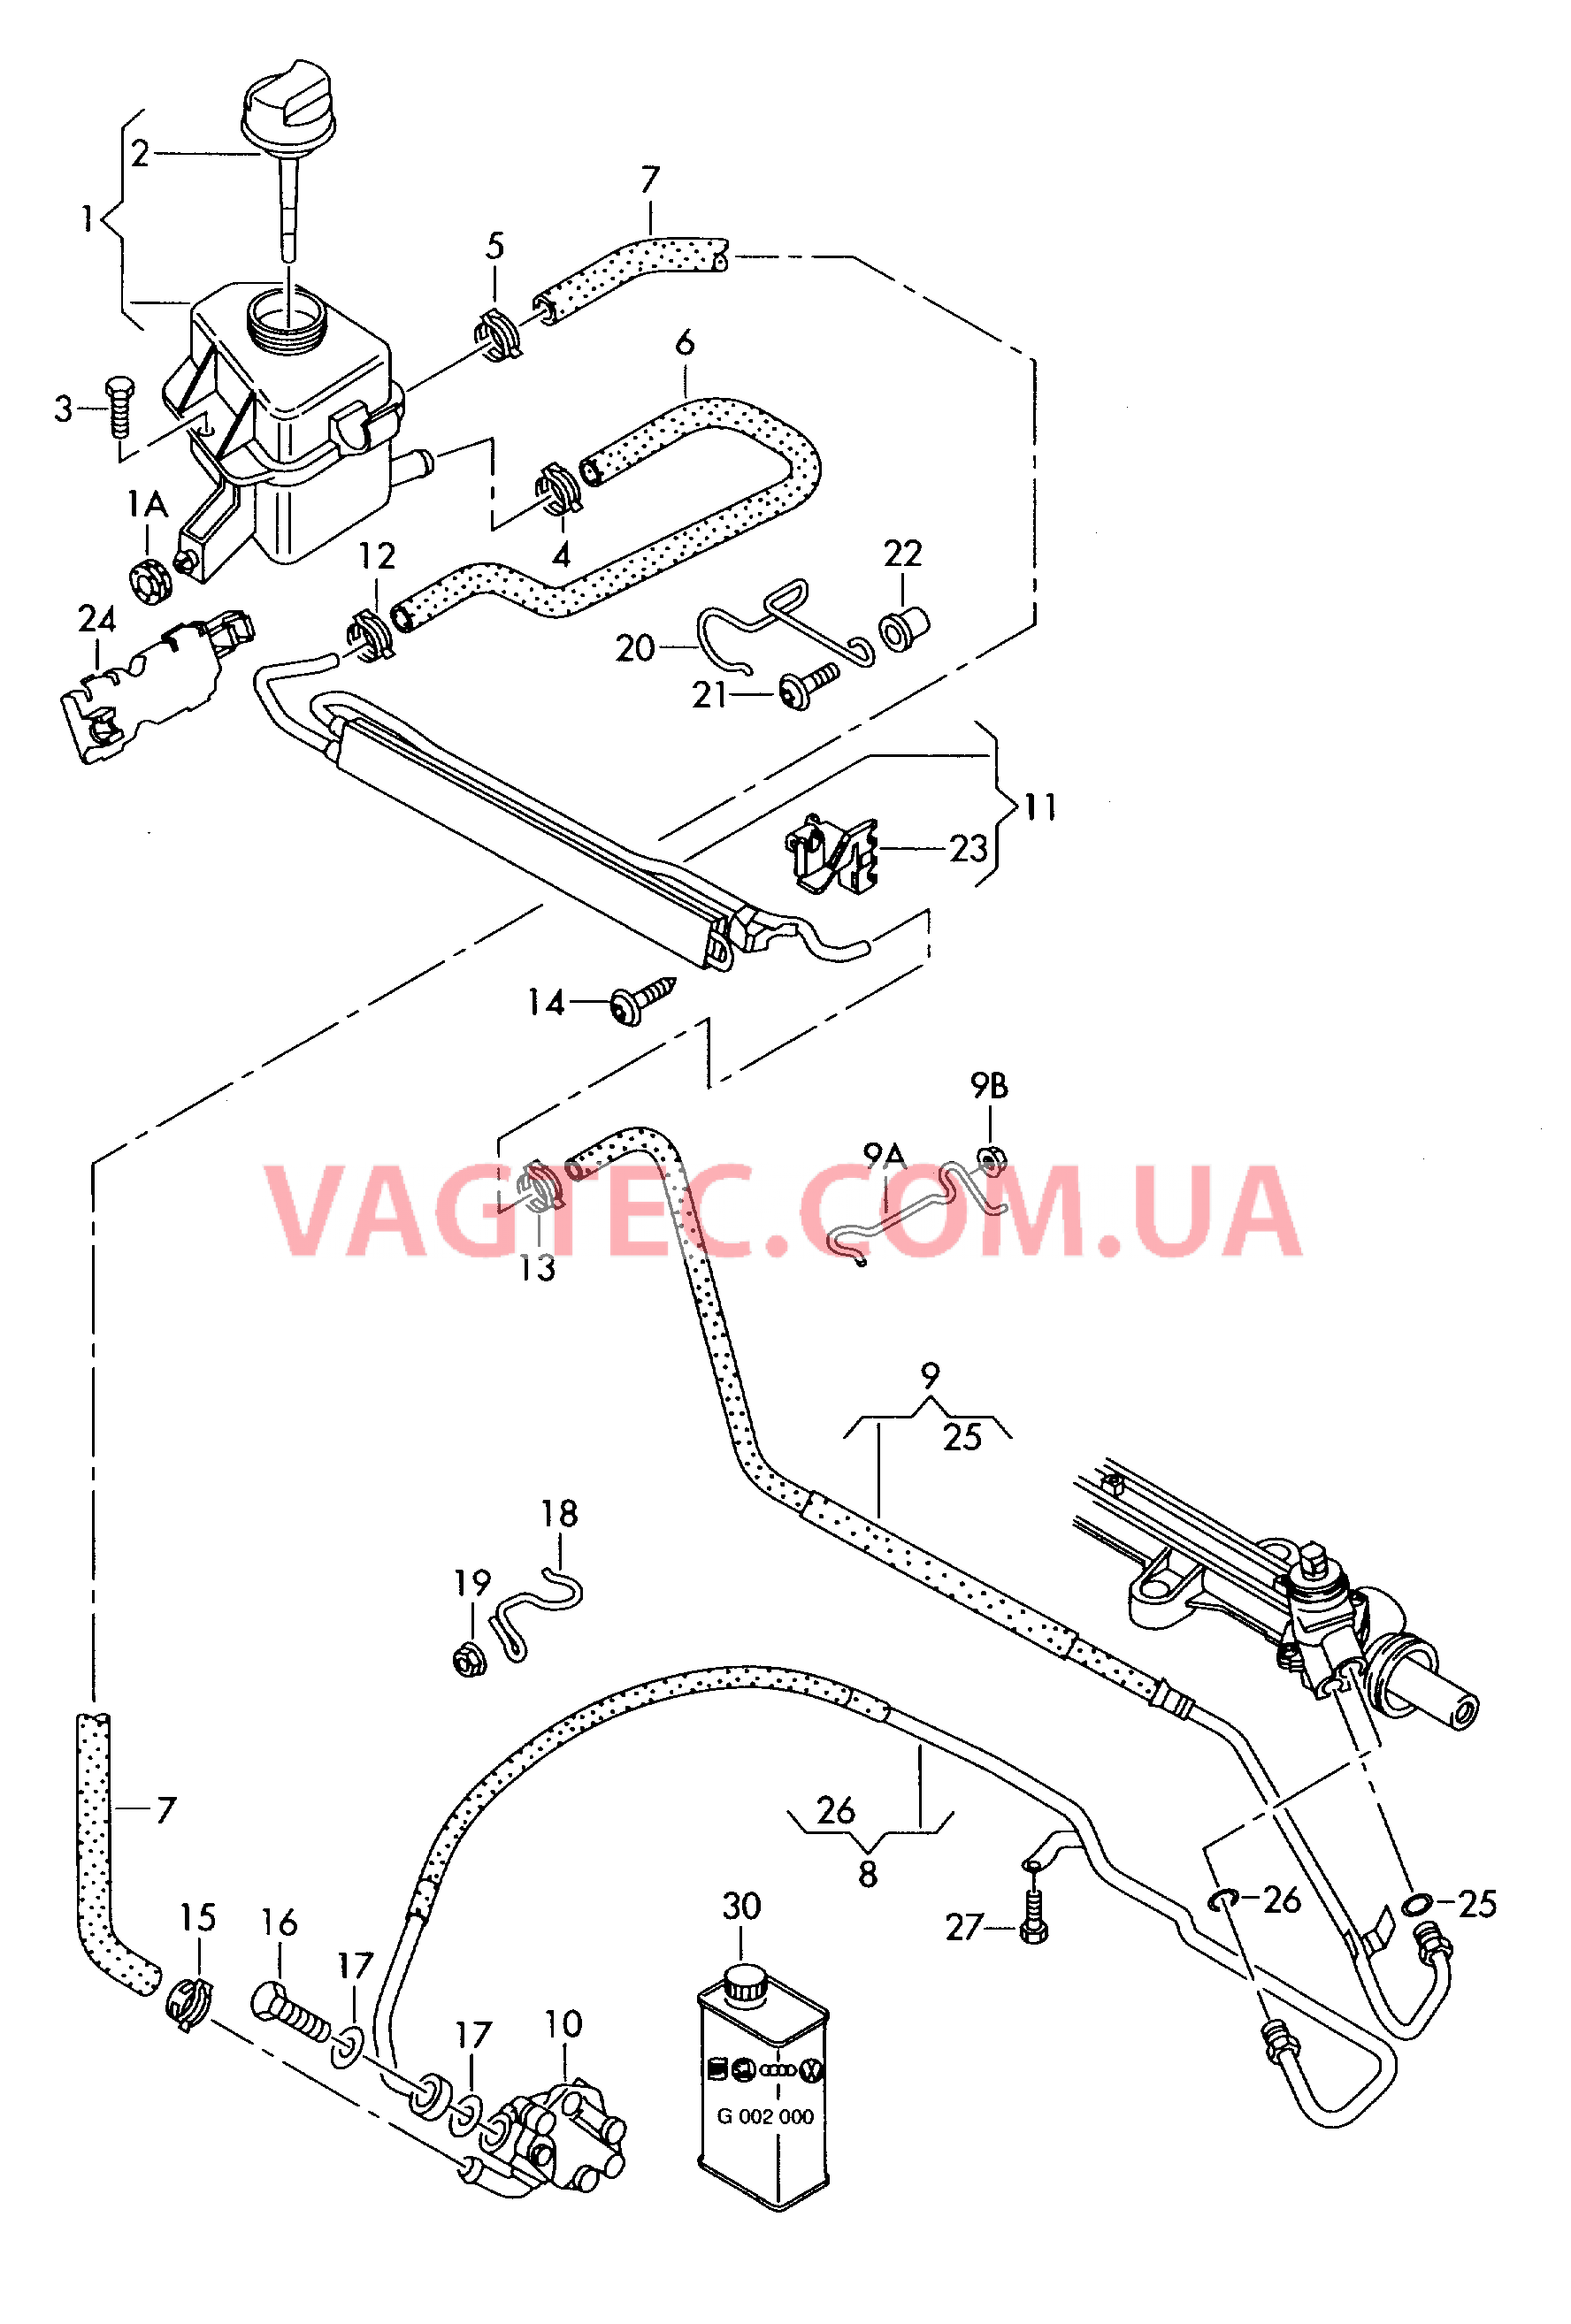 Масляный бачок с соединительными деталями, шлангами  для ГУРа  для VOLKSWAGEN Transporter 2005-1